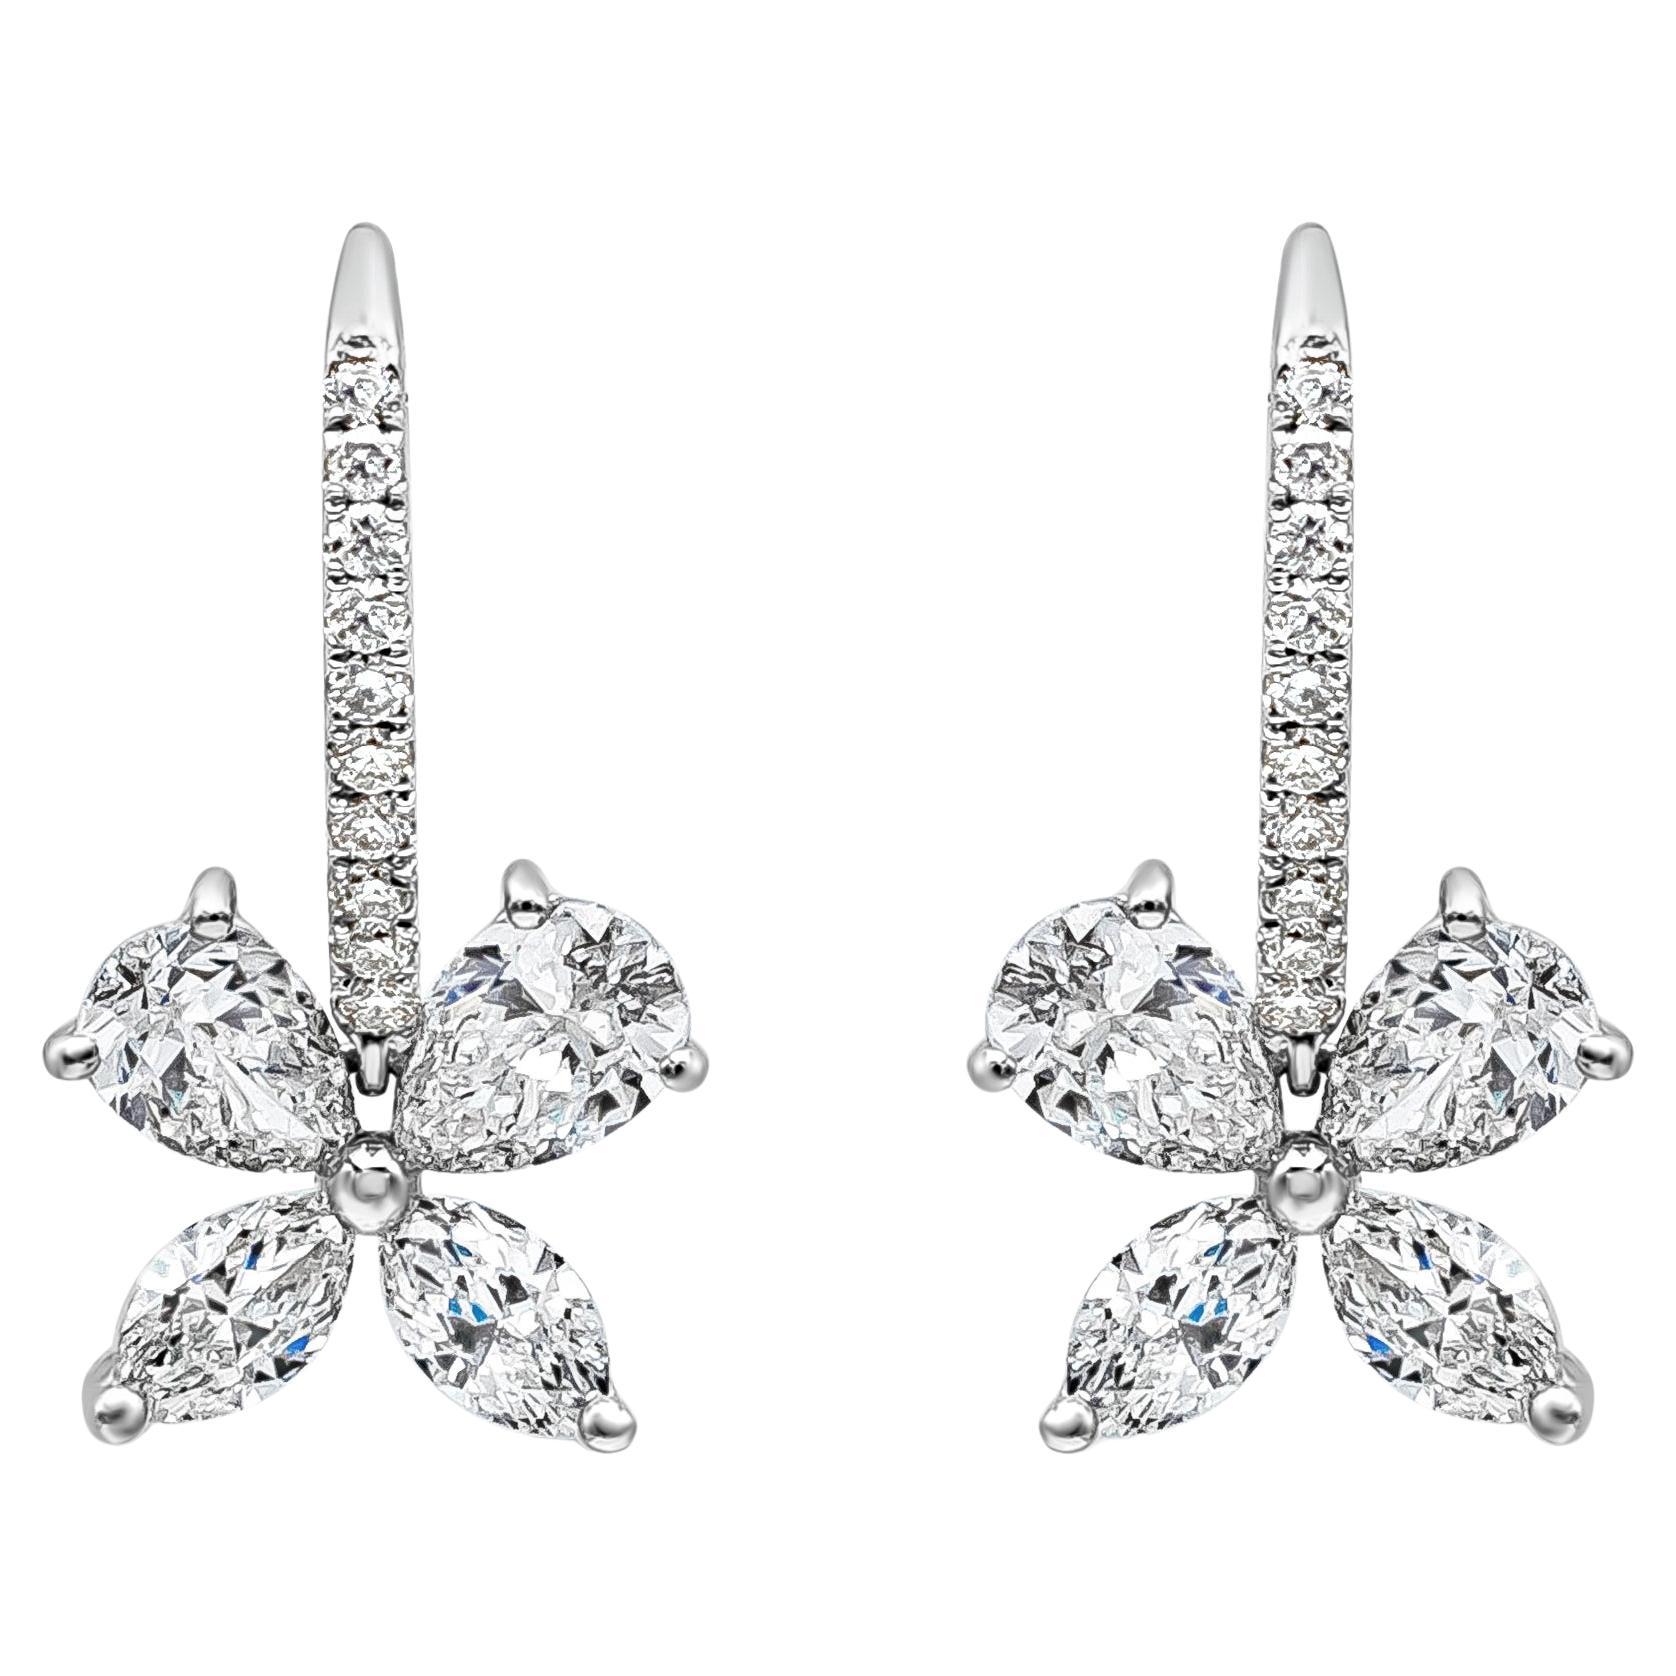 Roman Malakov, pendants d'oreilles de mode avec diamants de formes mixtes de 2,06 carats au total